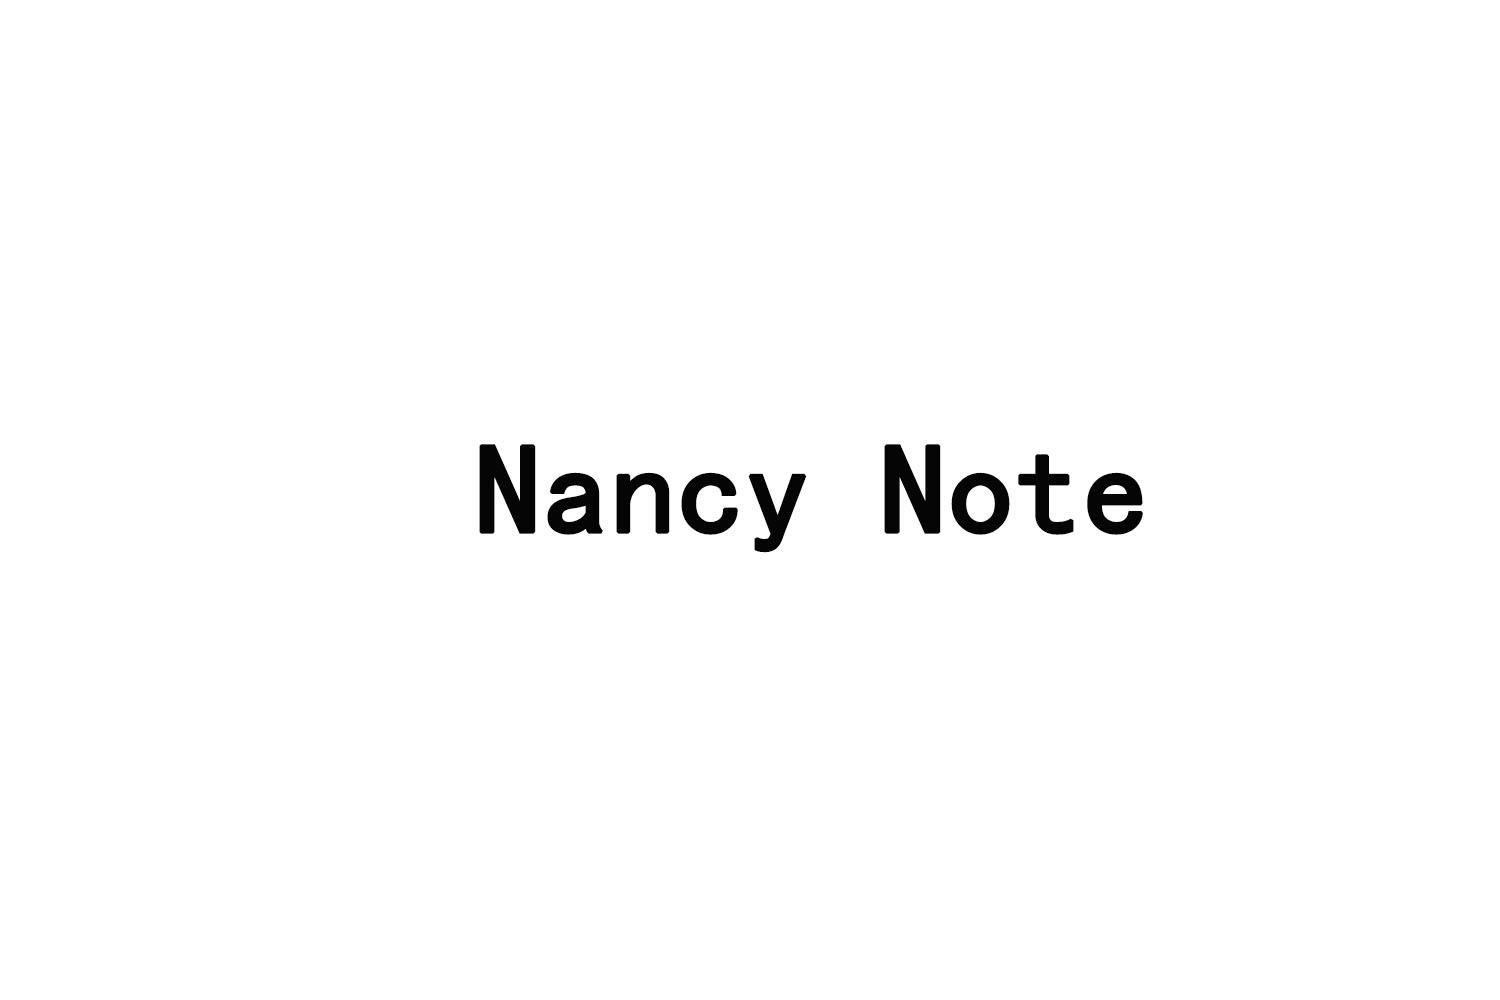 NANCY NOTE